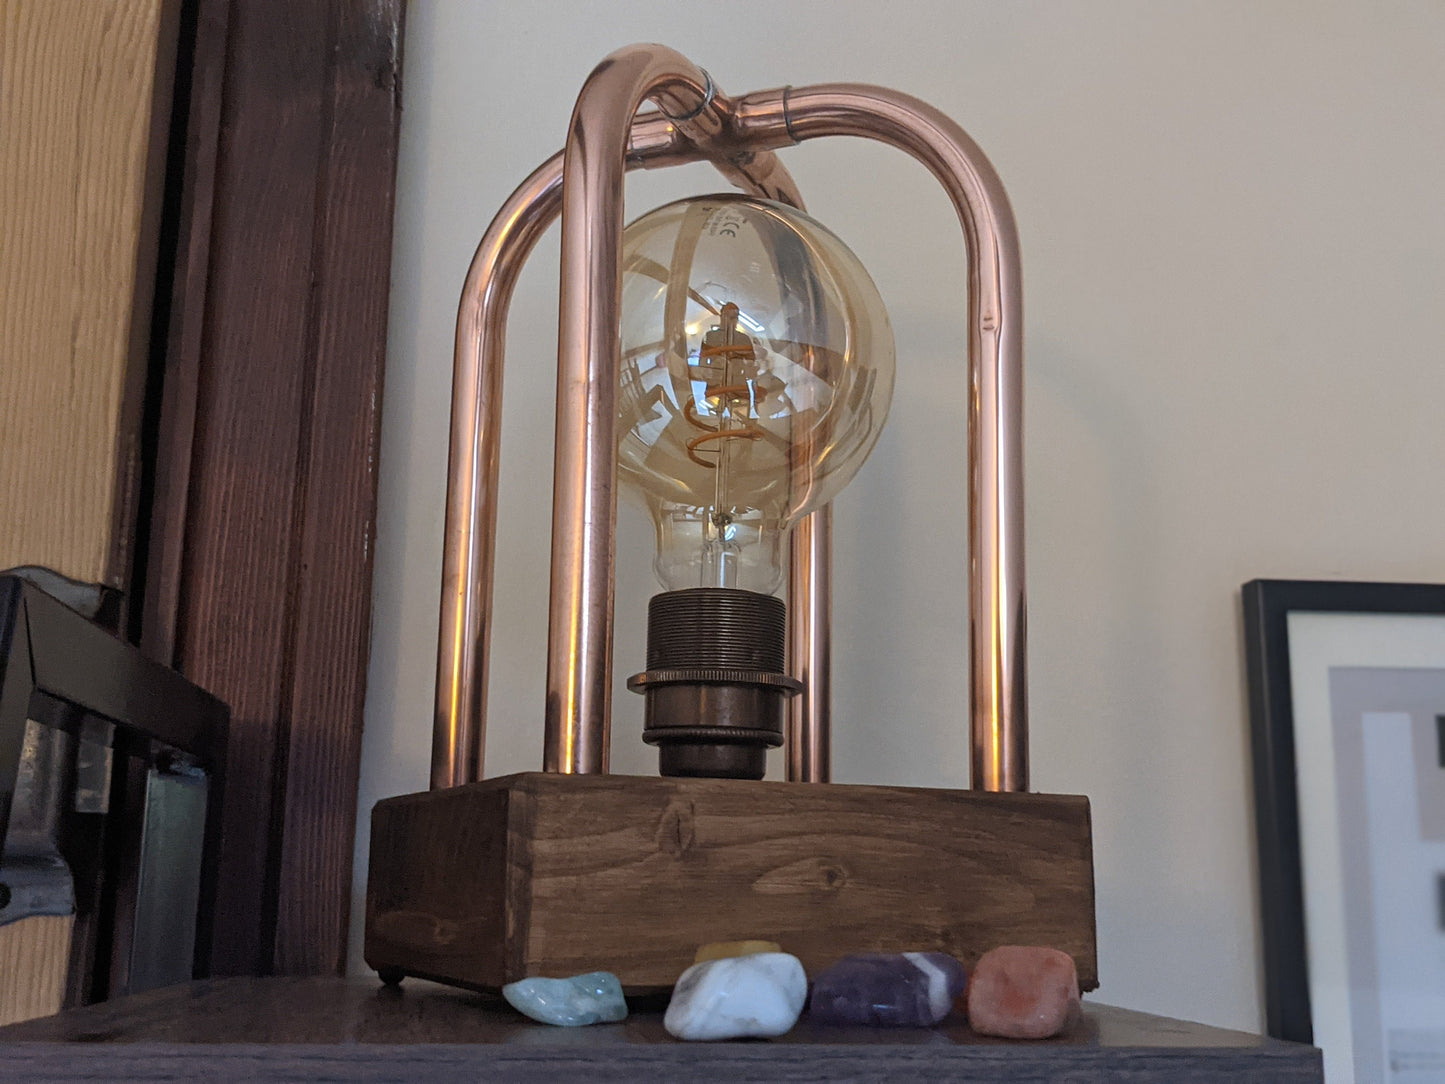 Copper Desk Lamp